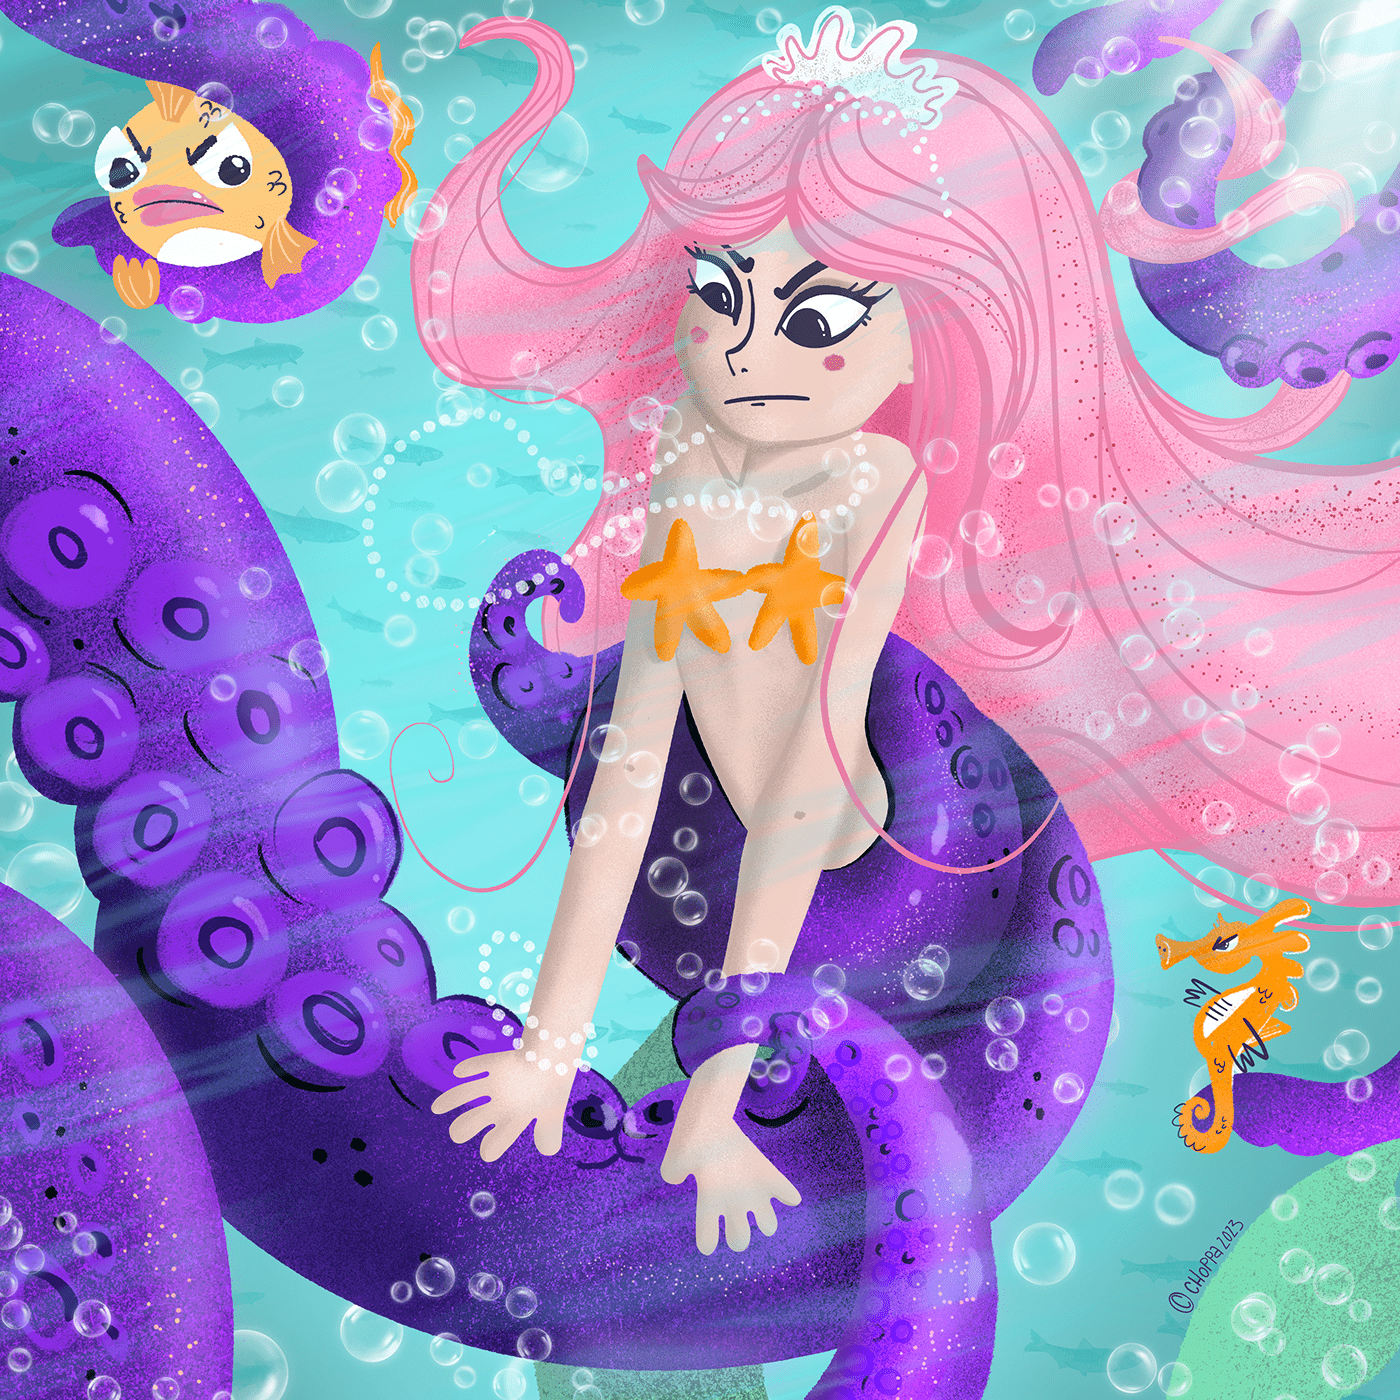 mermaid mermaids mermaid illustration mermay Procreate artwork digital illustration art